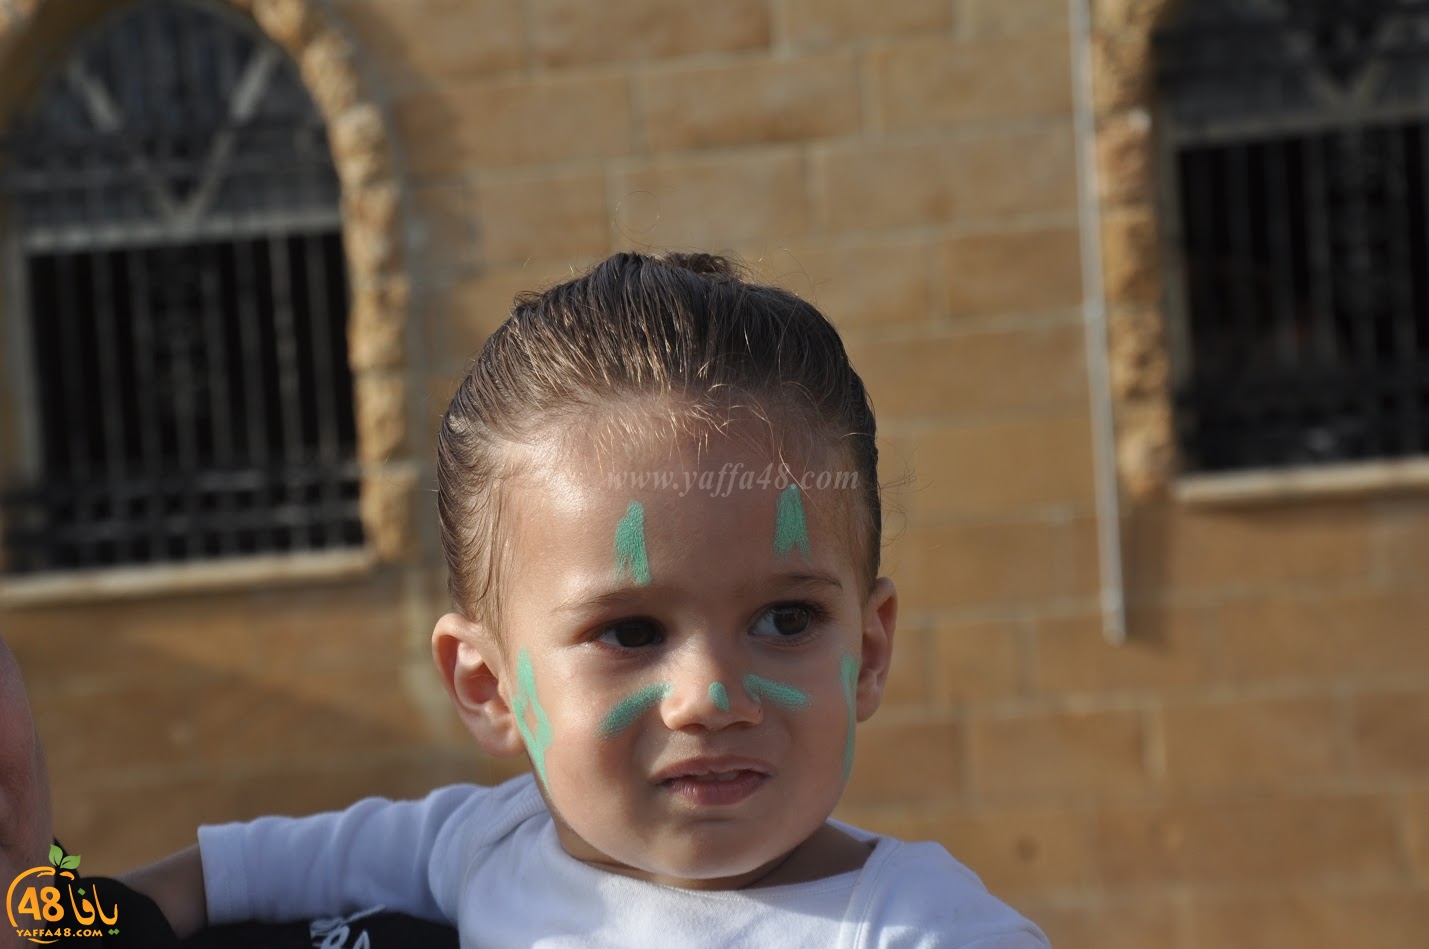  بالصور: فعاليات شيّقة للصغار في ساحة كيدرون بحي الجبلية في يافا